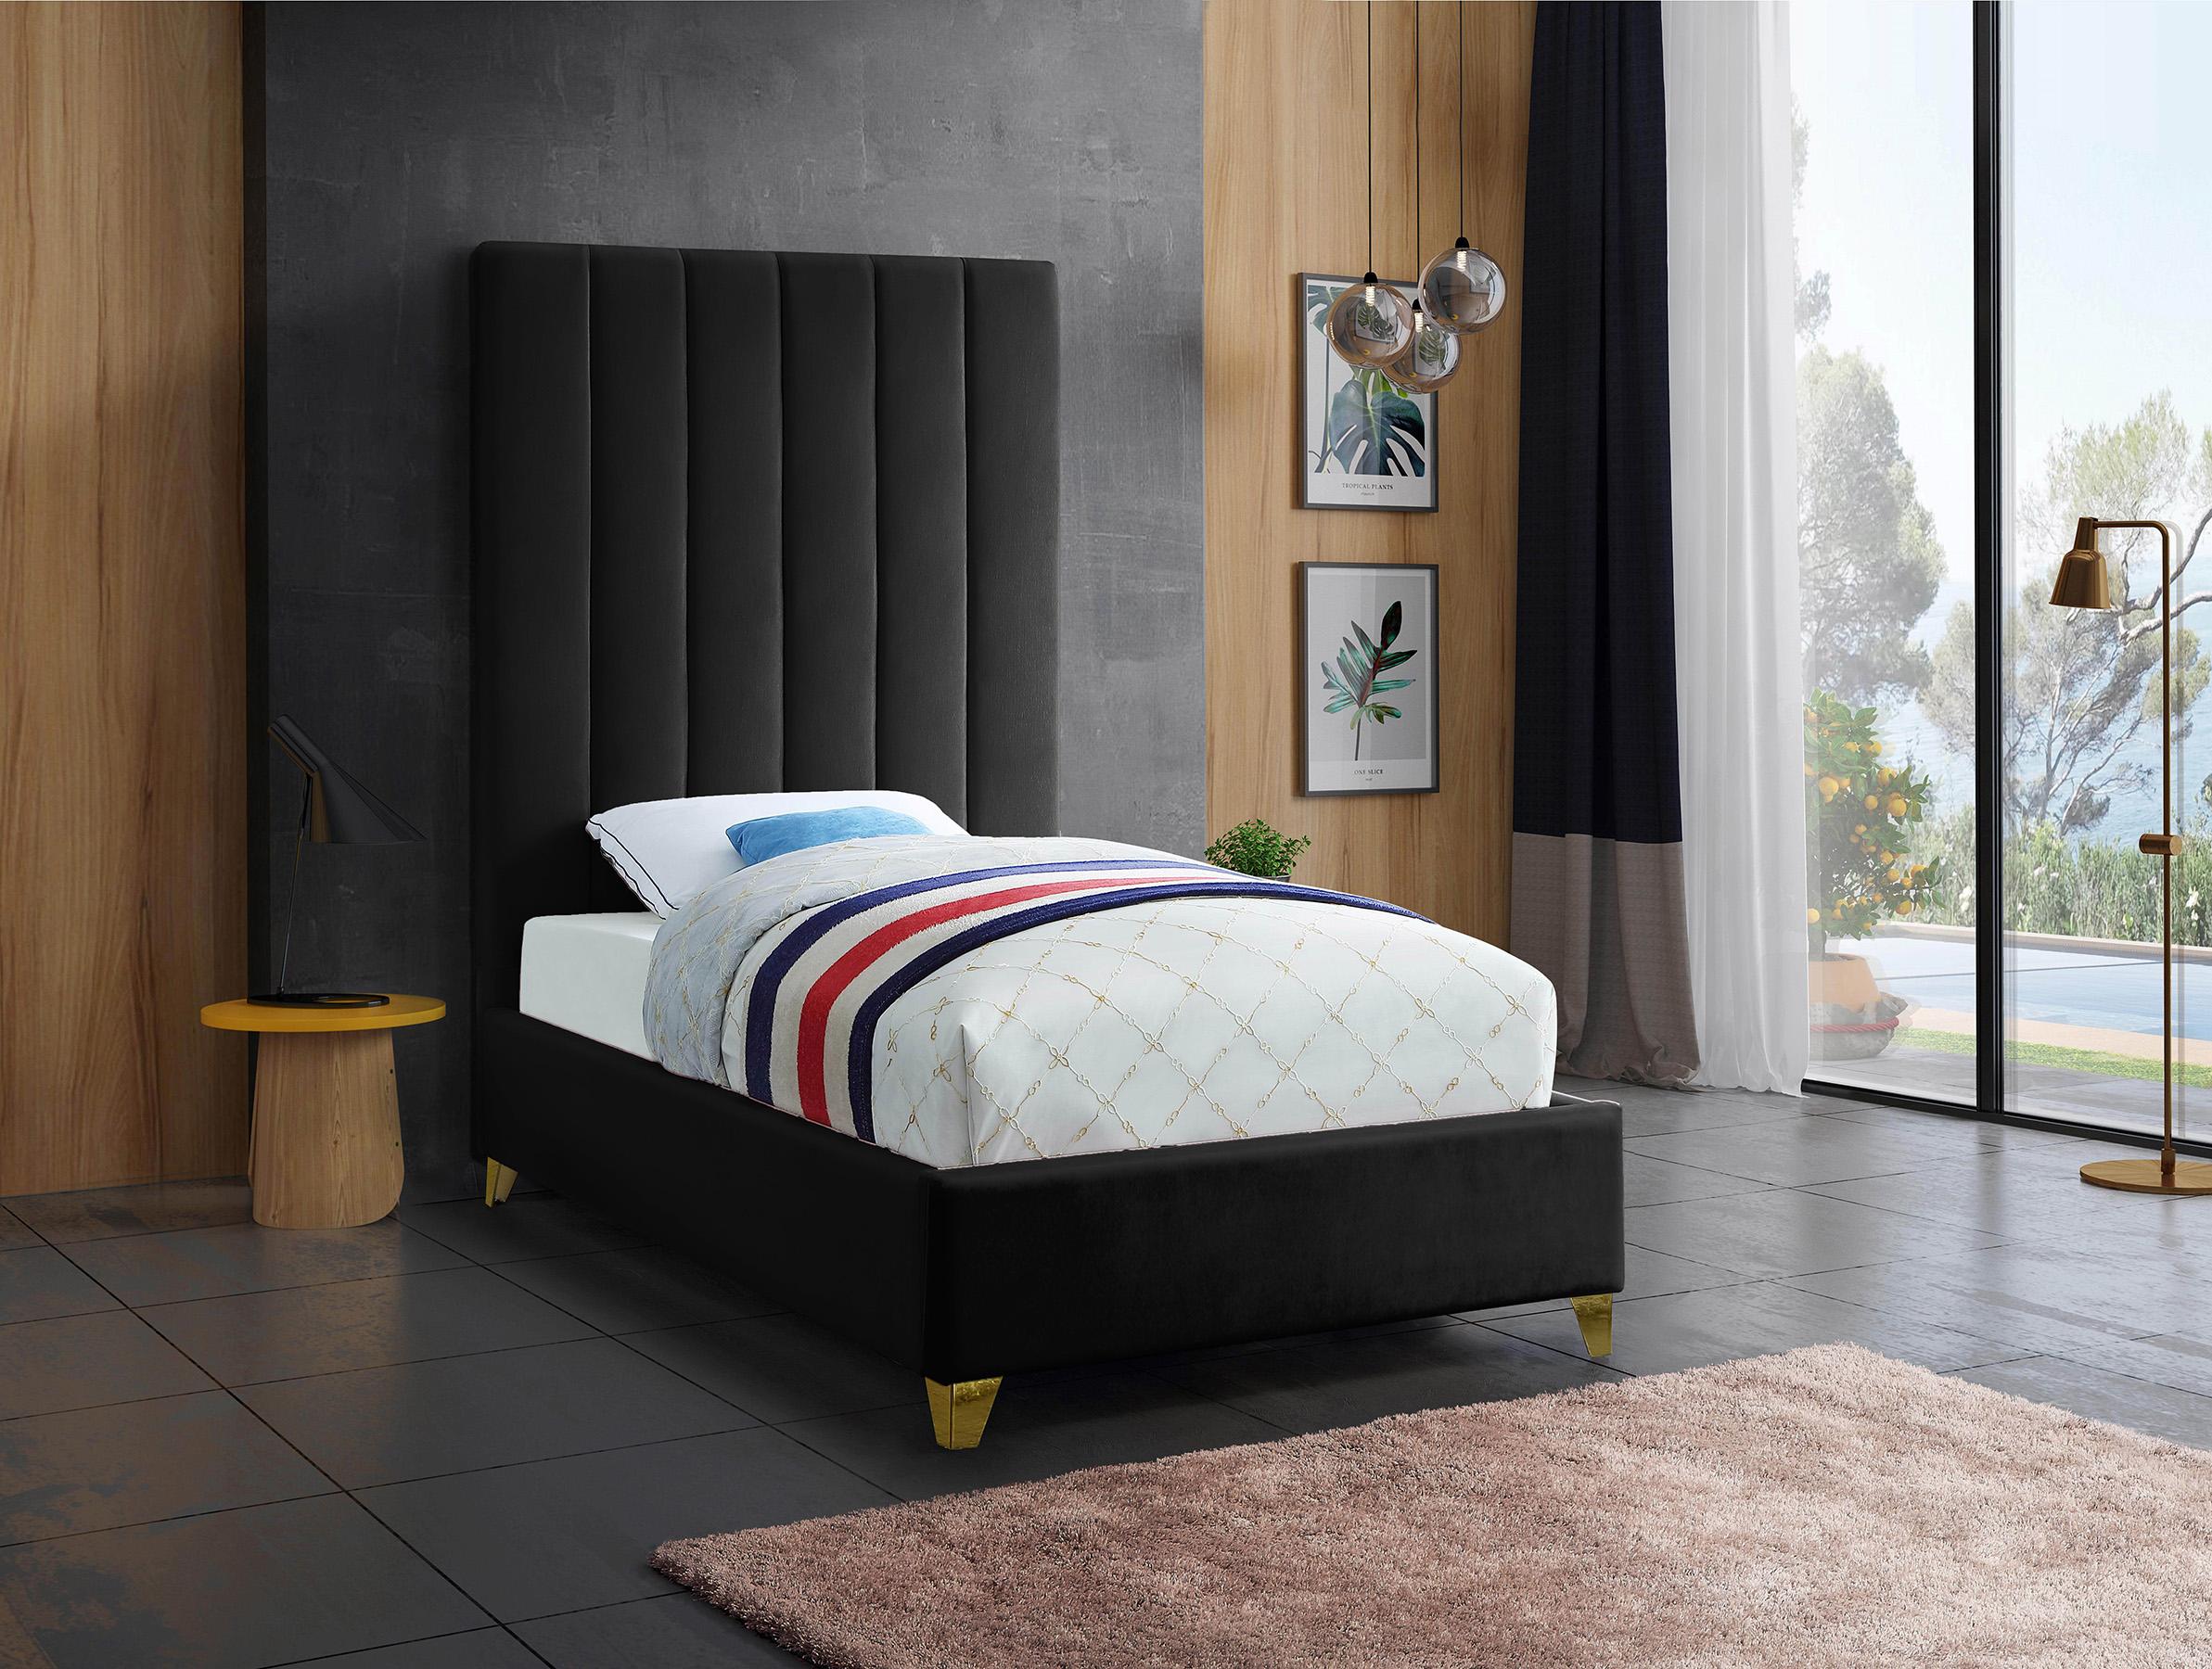 

    
ViaBlack-T Meridian Furniture Platform Bed
